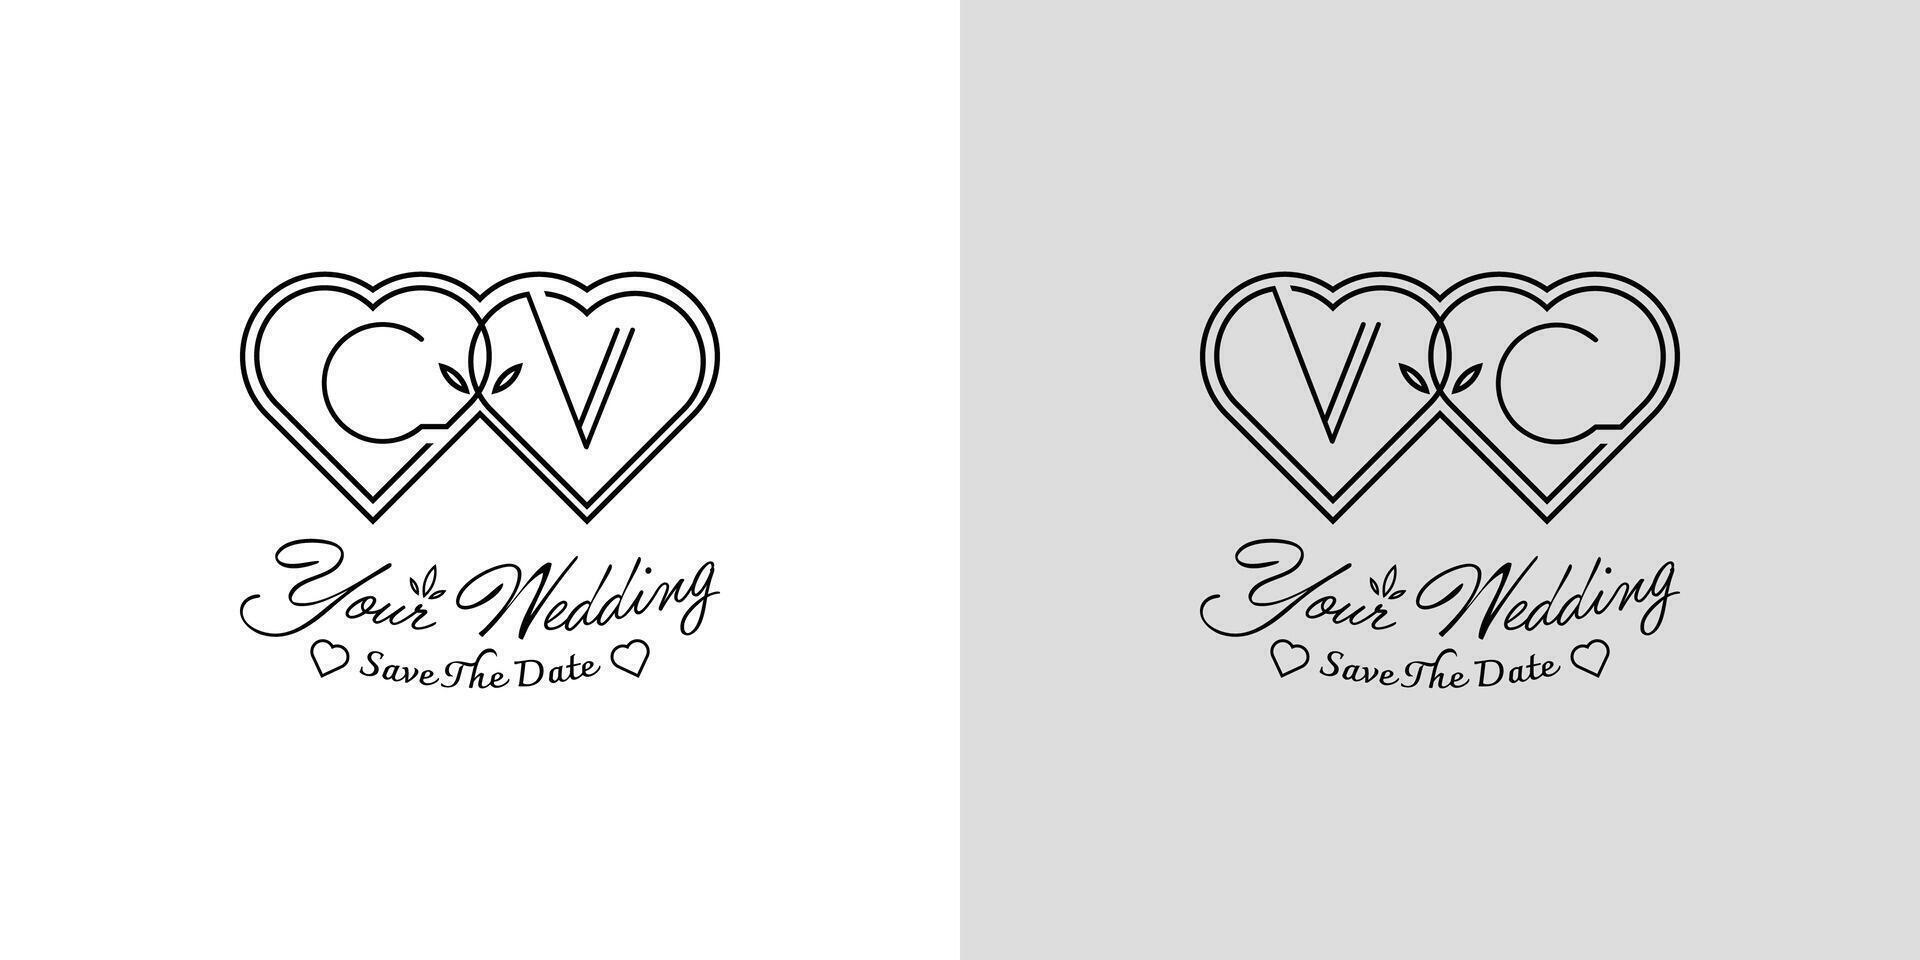 brev CV och vc bröllop kärlek logotyp, för par med c och v initialer vektor